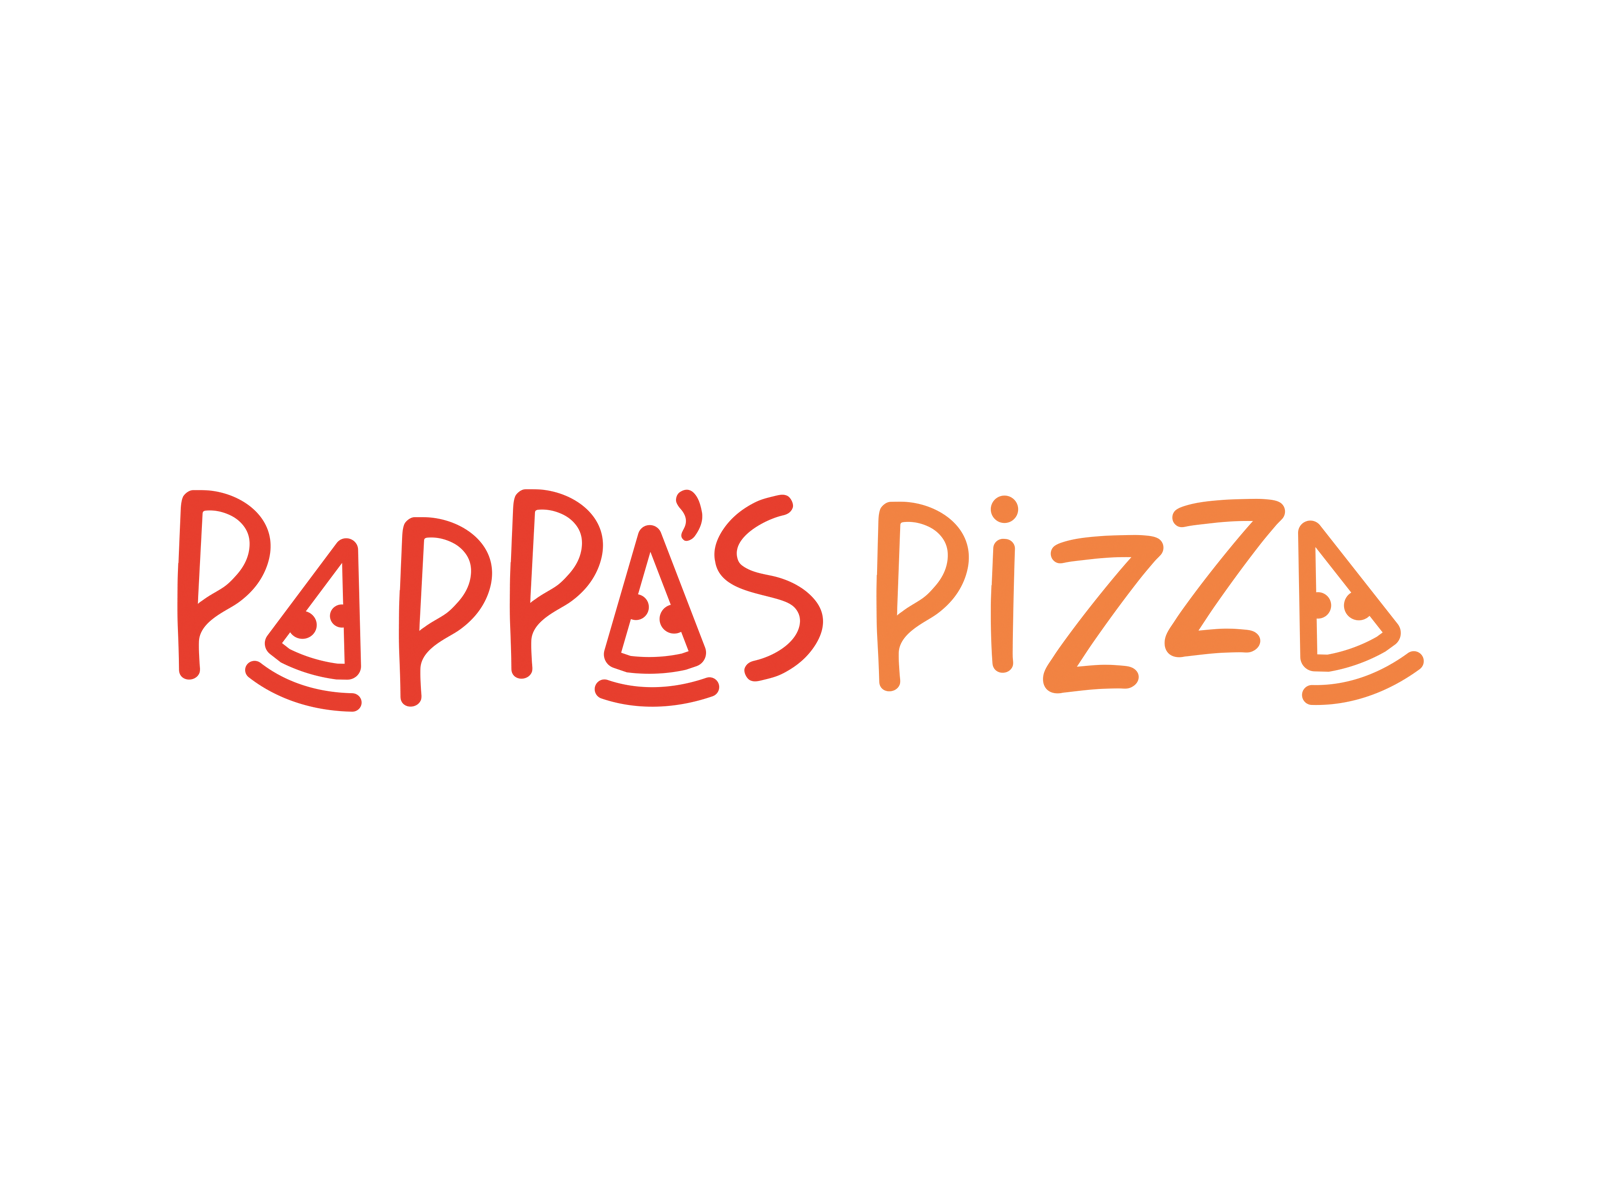 Pappas pizza 3